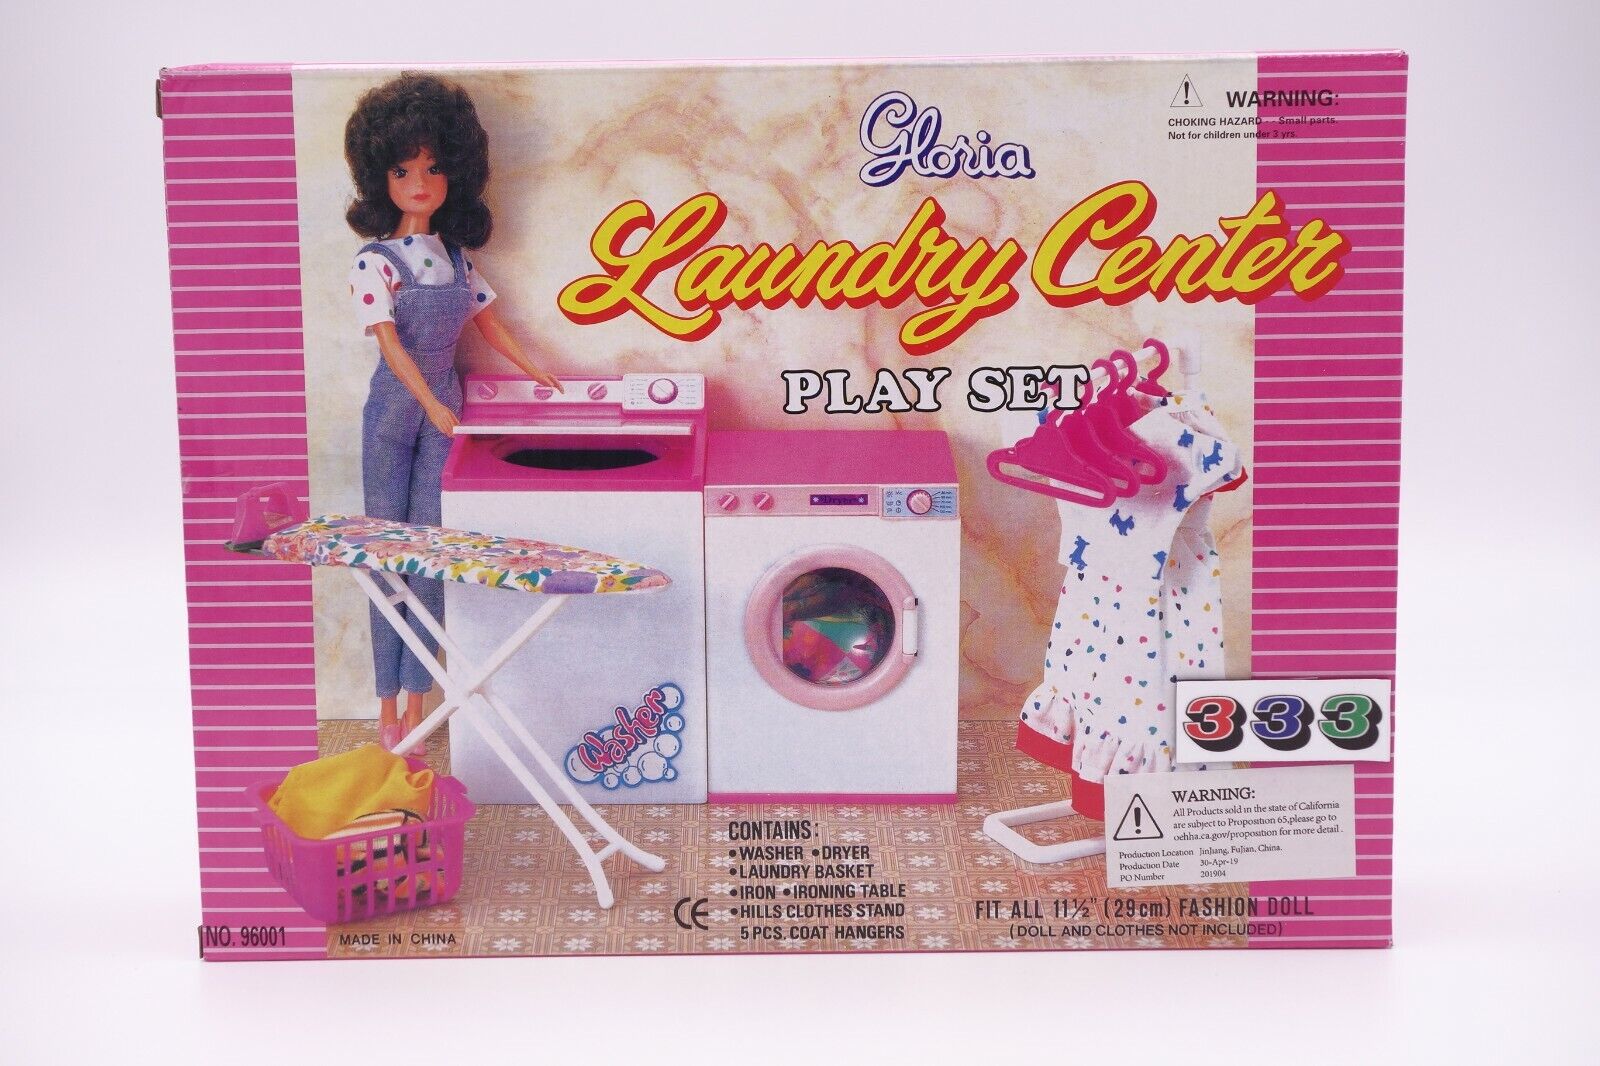 Gloria Laundry Center Play Set (96001)